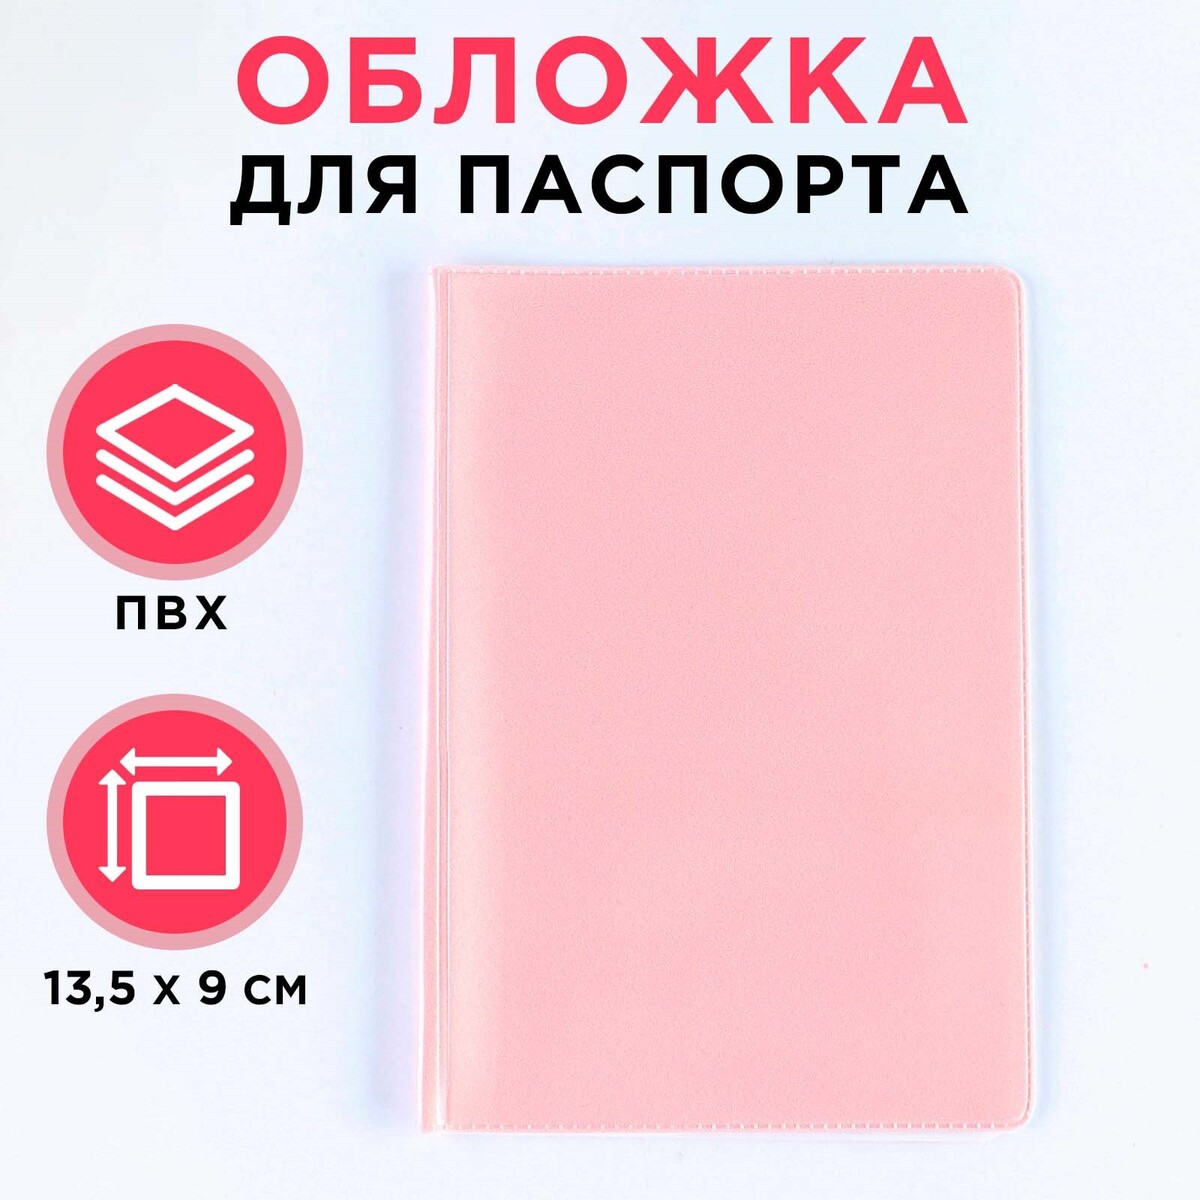 Обложка для паспорта, пвх, цвет персиковый